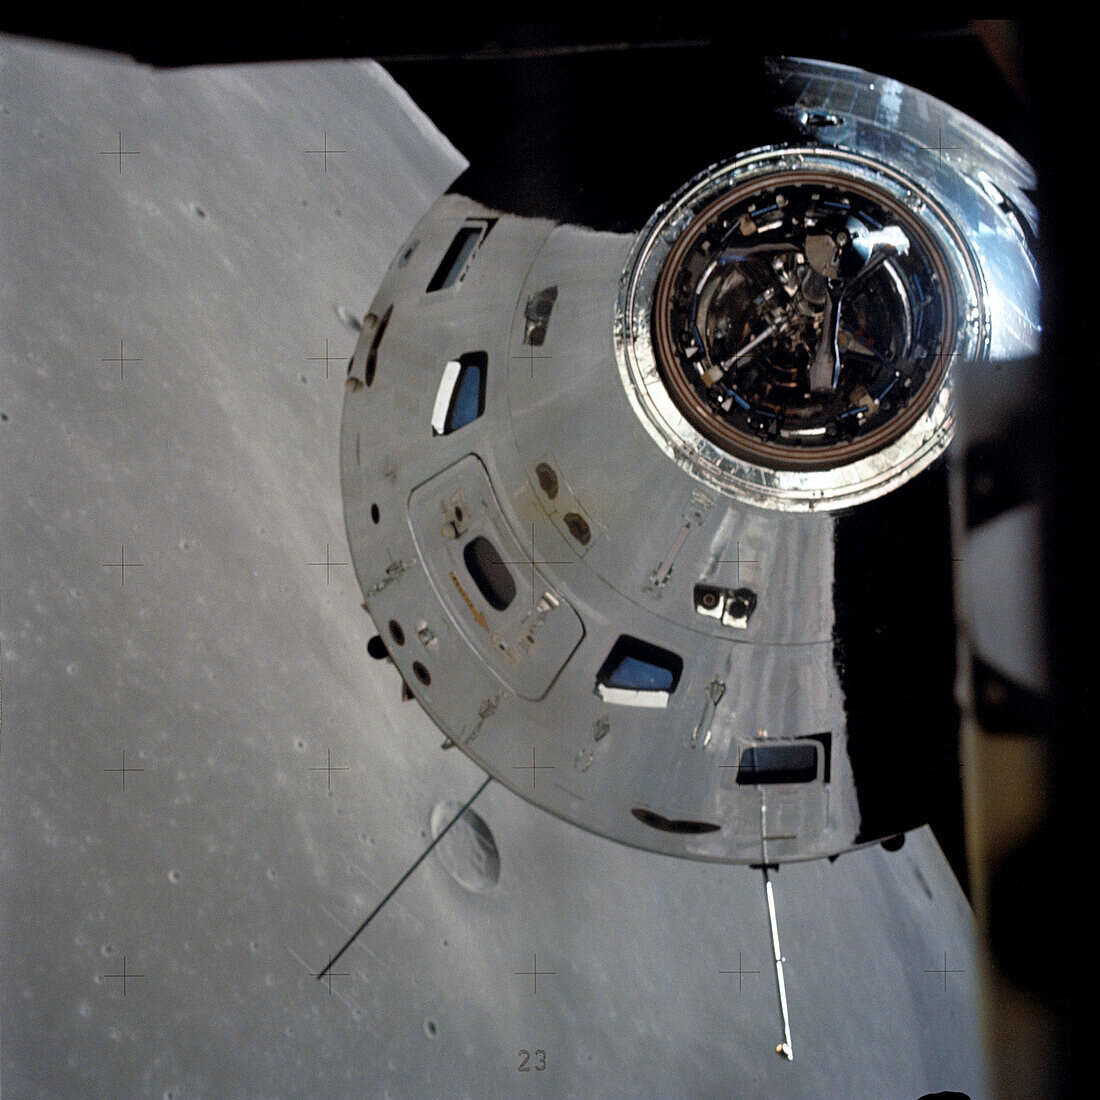 Apollo 17 command module above moon